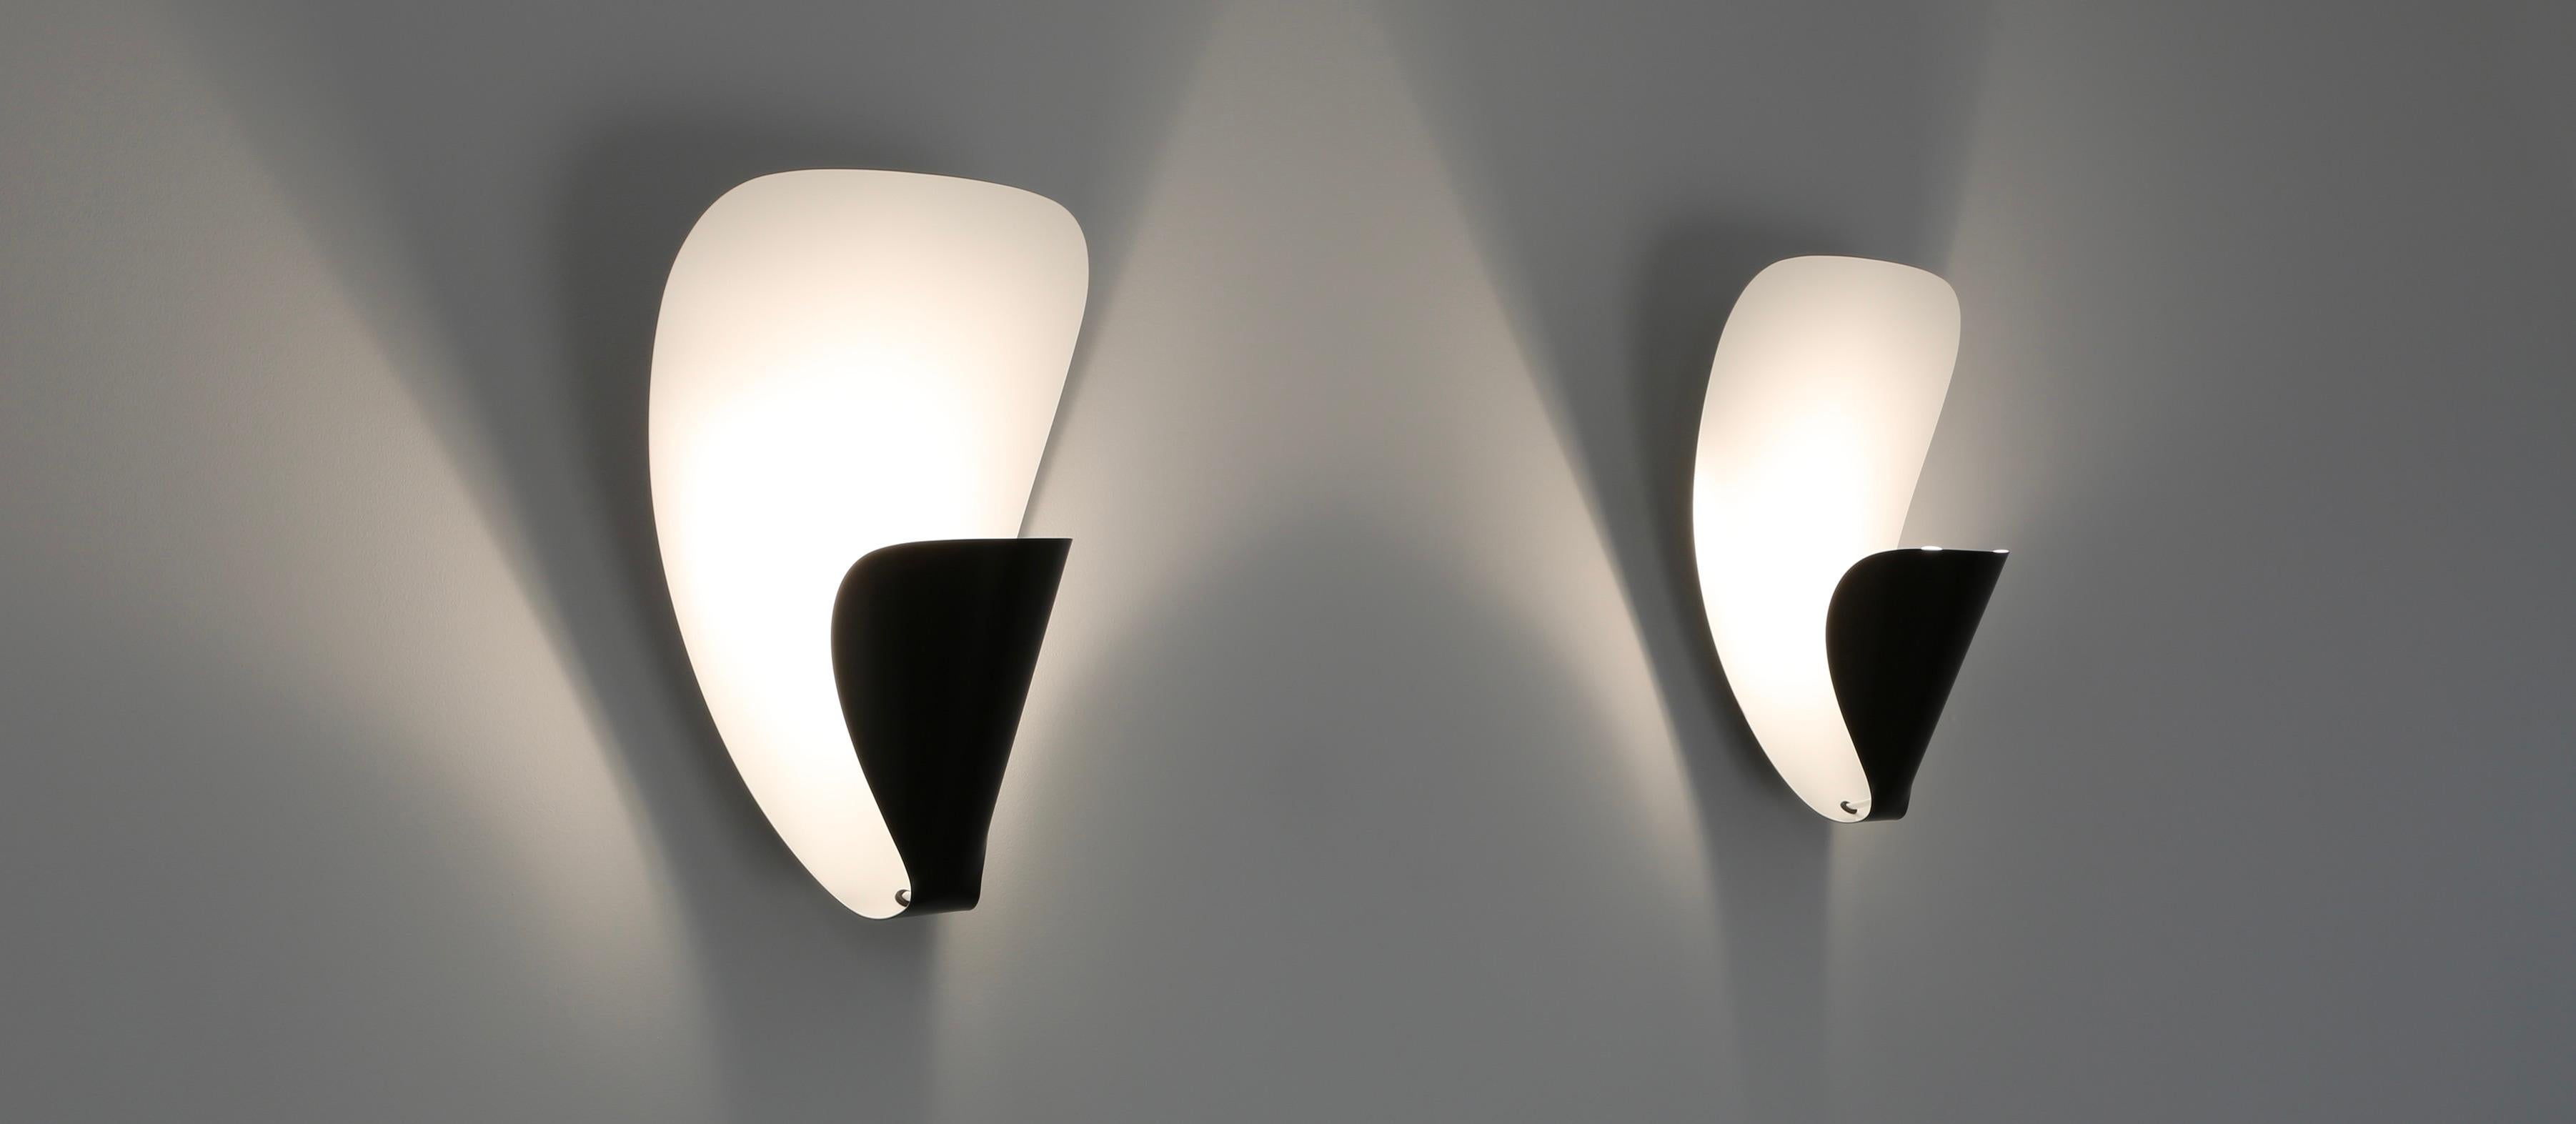 Michel Buffet a créé l'applique B206 en 1953.
 Parmi ses créations pour la maison, les luminaires se distinguent. Leurs formes géométriques abstraites ont résisté à l'épreuve du temps sans se démoder. Sculptures éteintes, elles s'illuminent par